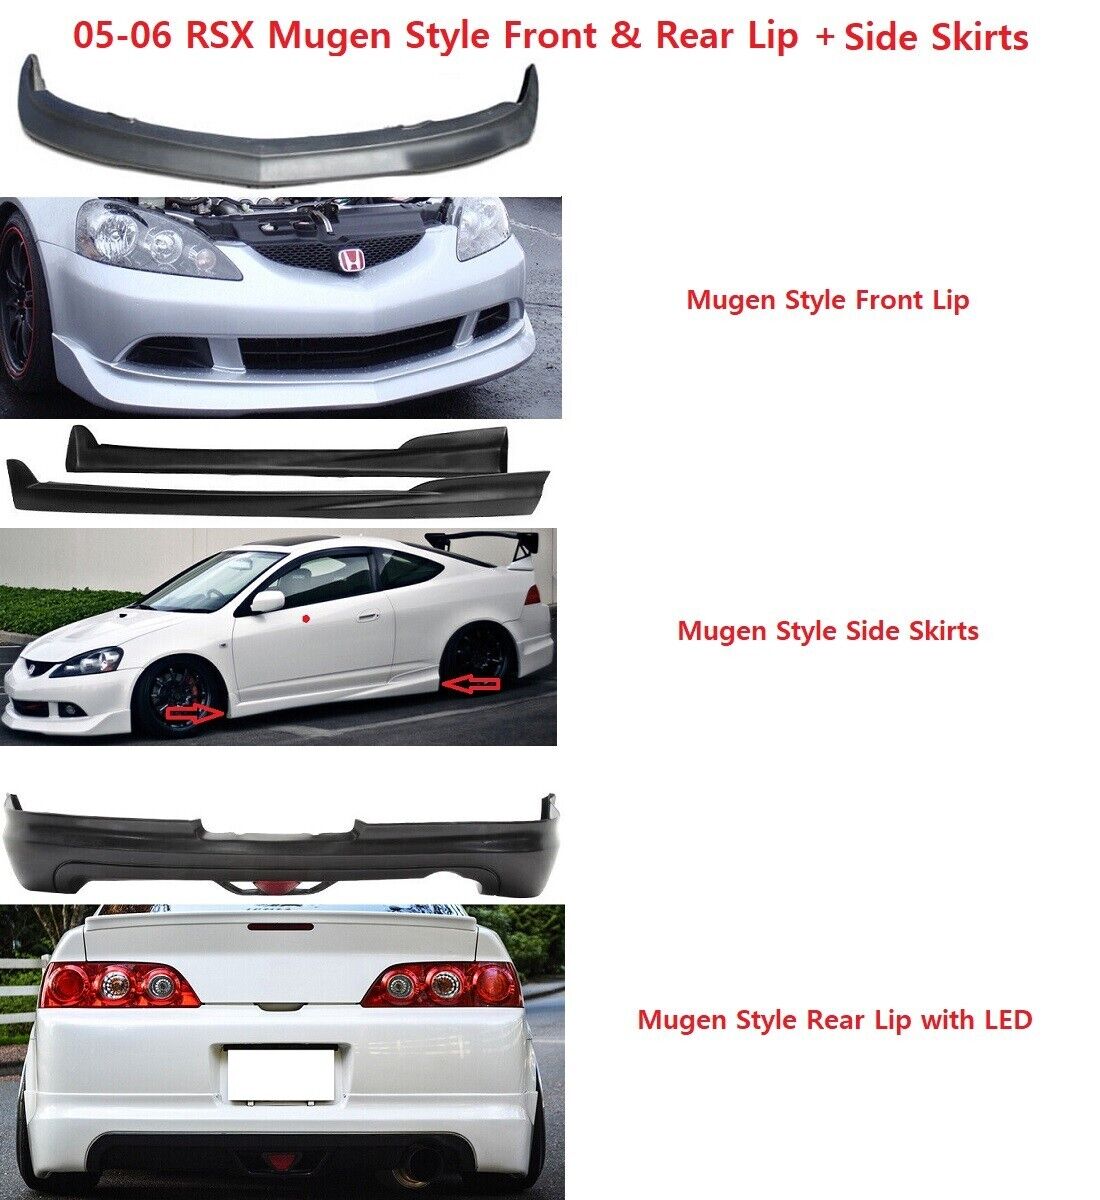 For 05-06 RSX Mugen Style Front + Rear Bumper Lip + LED Brake Light + Side Skirt